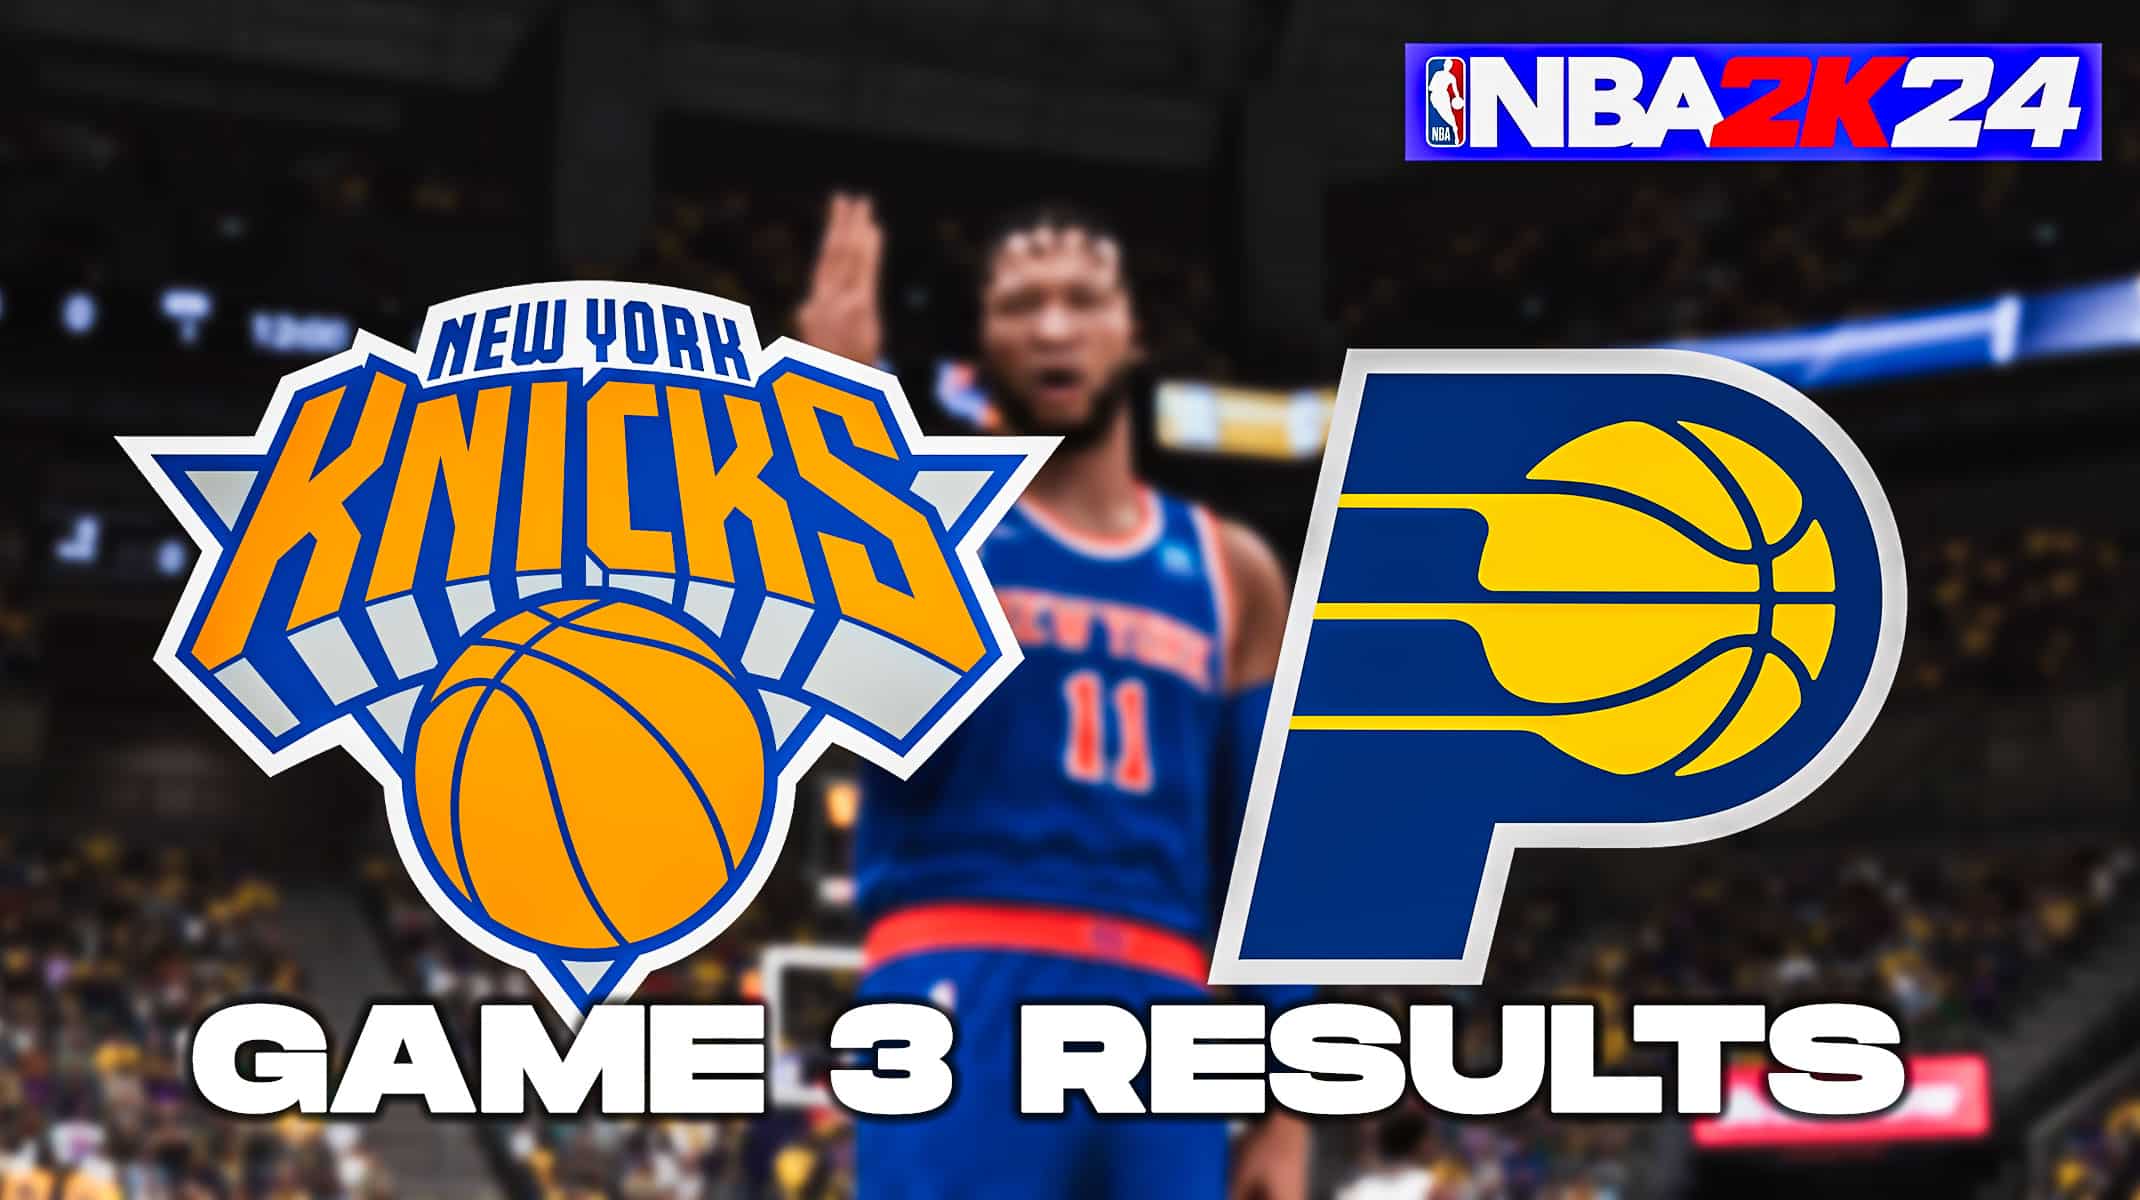 Результаты третьей игры «Никс» против «Пэйсерс» по данным NBA 2K24